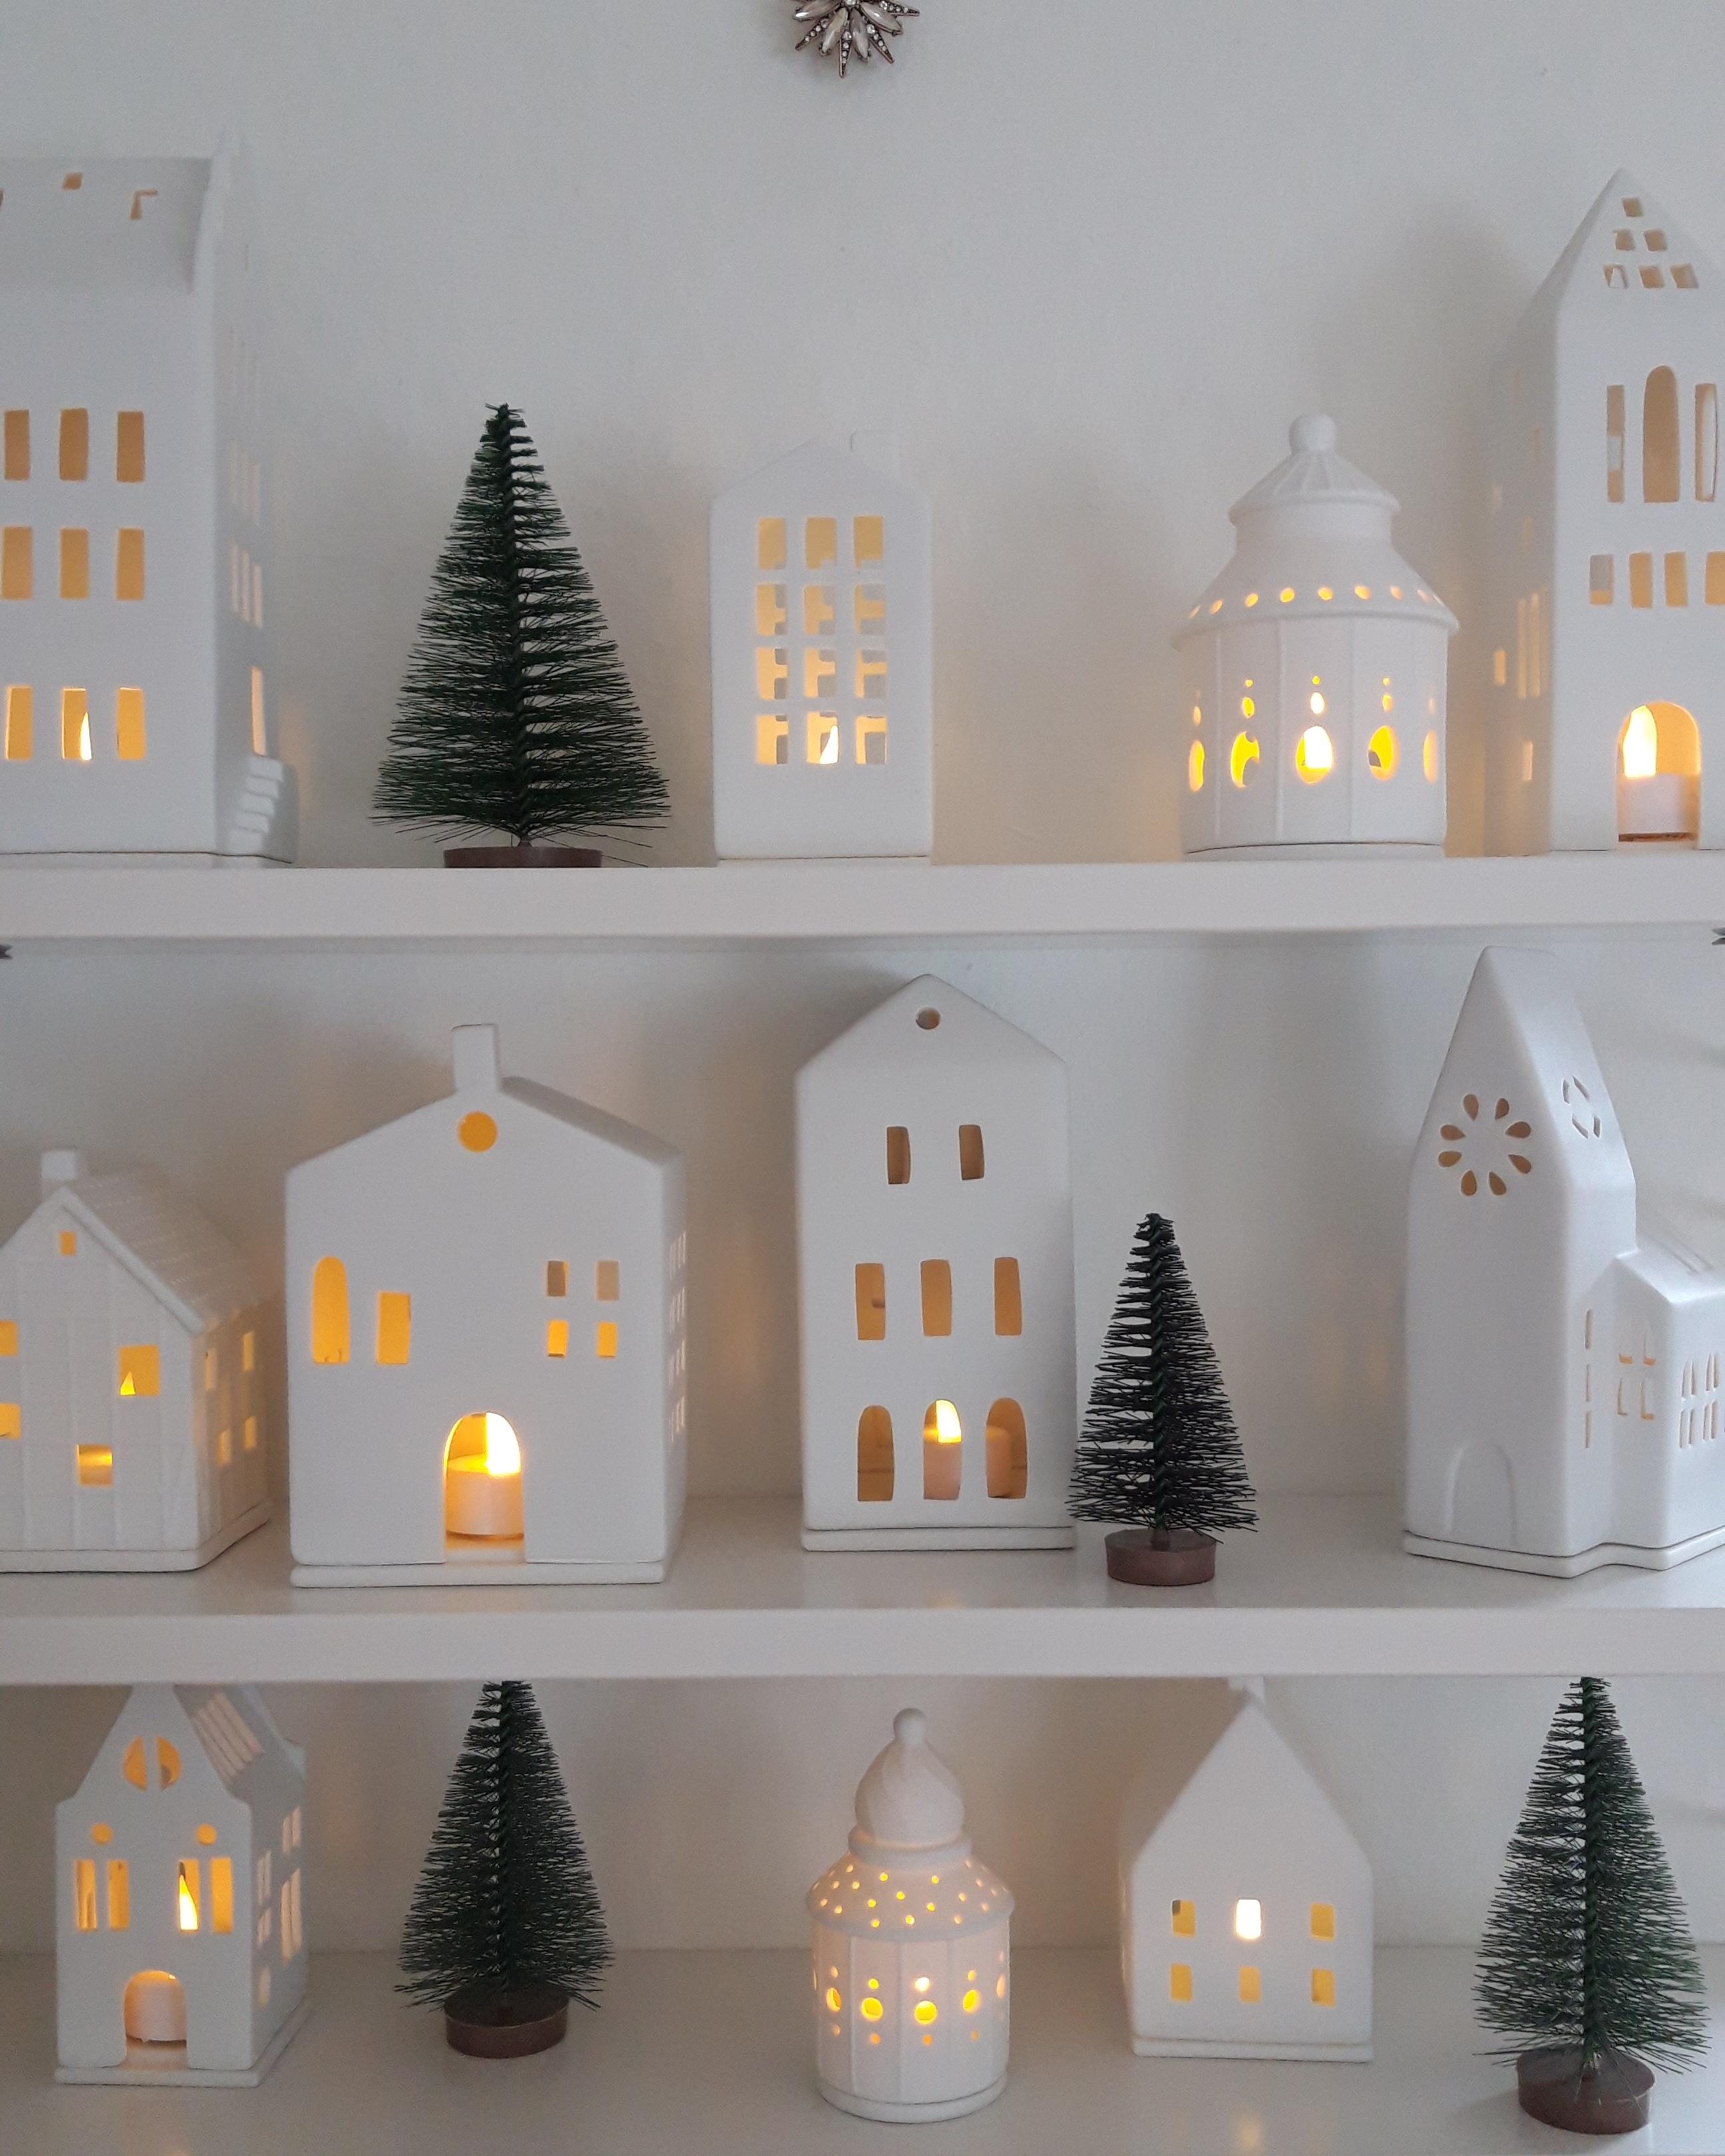 Christmas Lights💫
#lichthäuser #christmastown #weihnachtsdeko #weihnachten